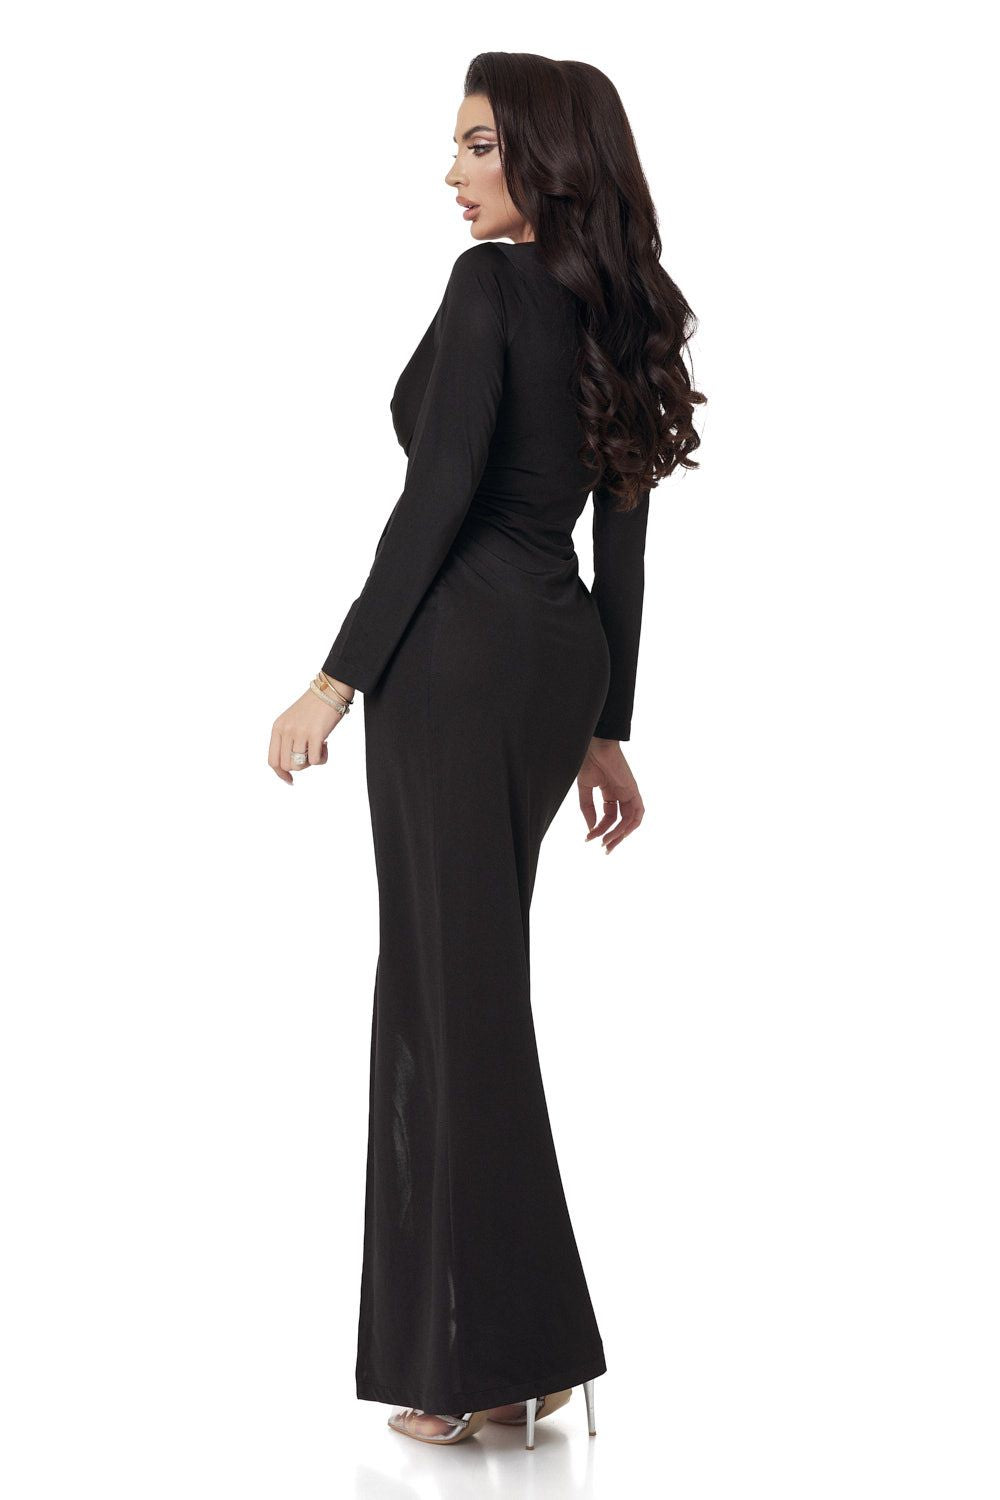 Long black lycra dress for women Nallely Bogas